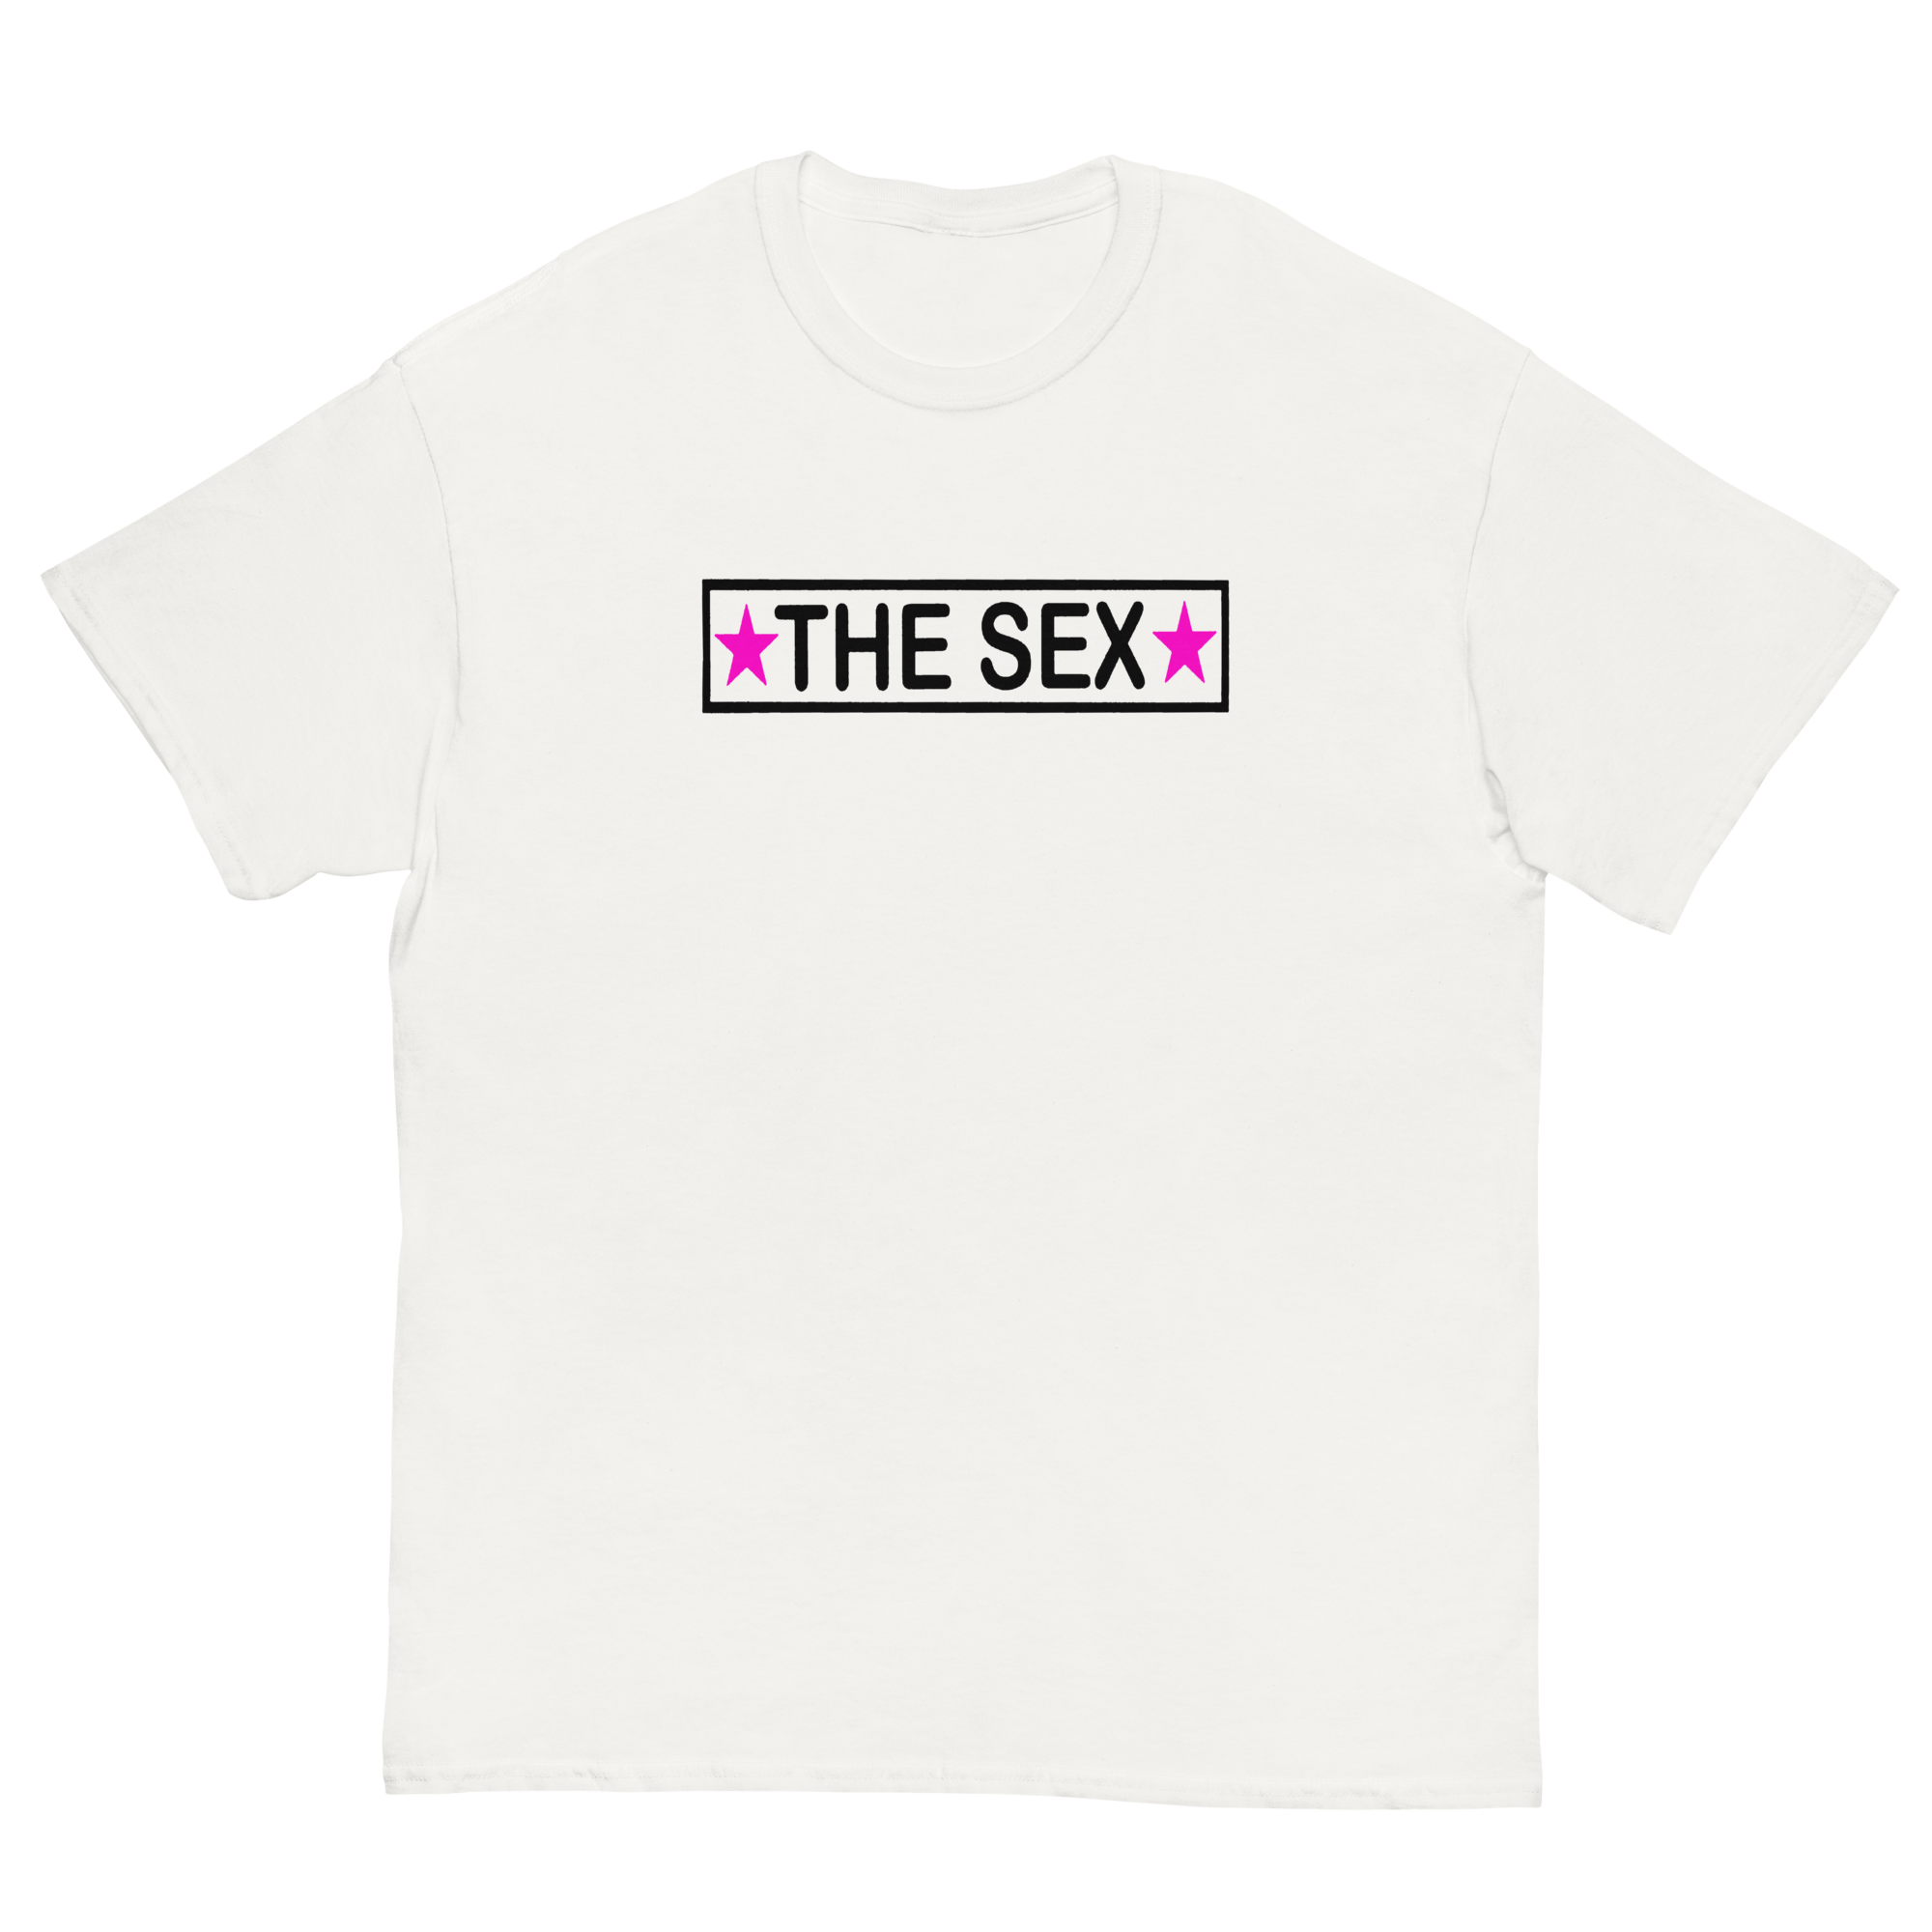 THE SEX T-SHIRT